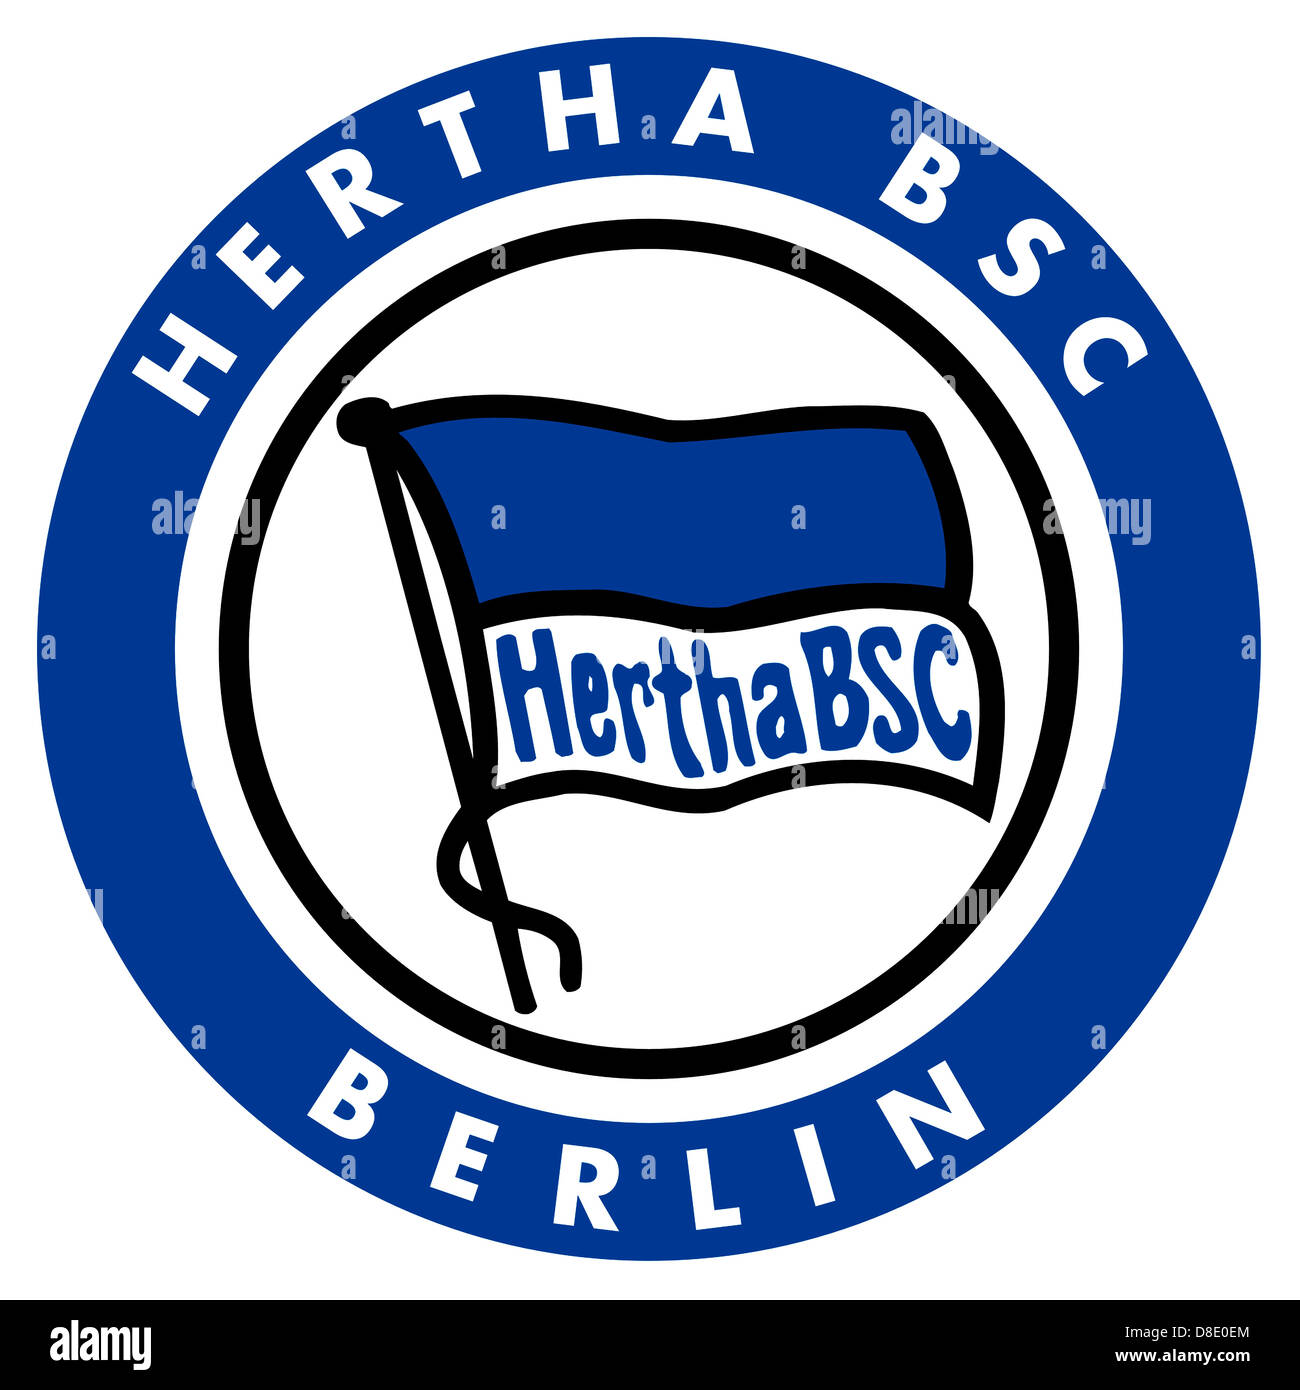 Logo de l'équipe allemande de football Hertha BSC Berlin Photo Stock - Alamy